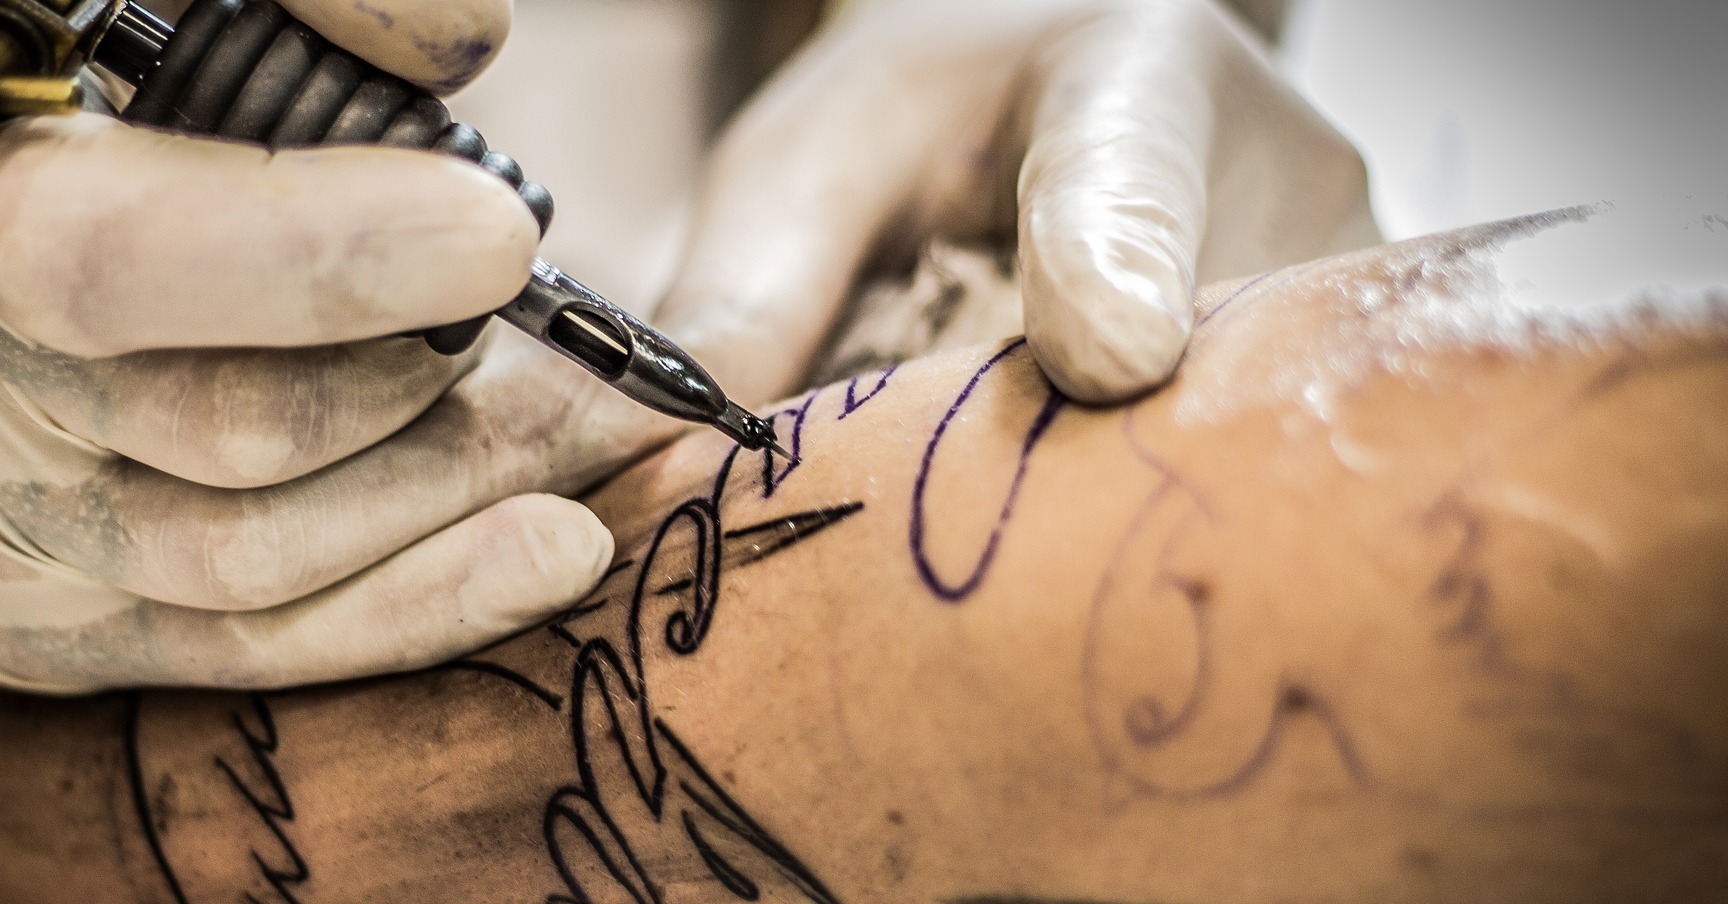 Sí, una persona con tatuajes puede donar sangre (pero en España tiene que esperar cuatro meses desde que se los hizo) · Maldita.es - Periodismo para que no te la cuelen